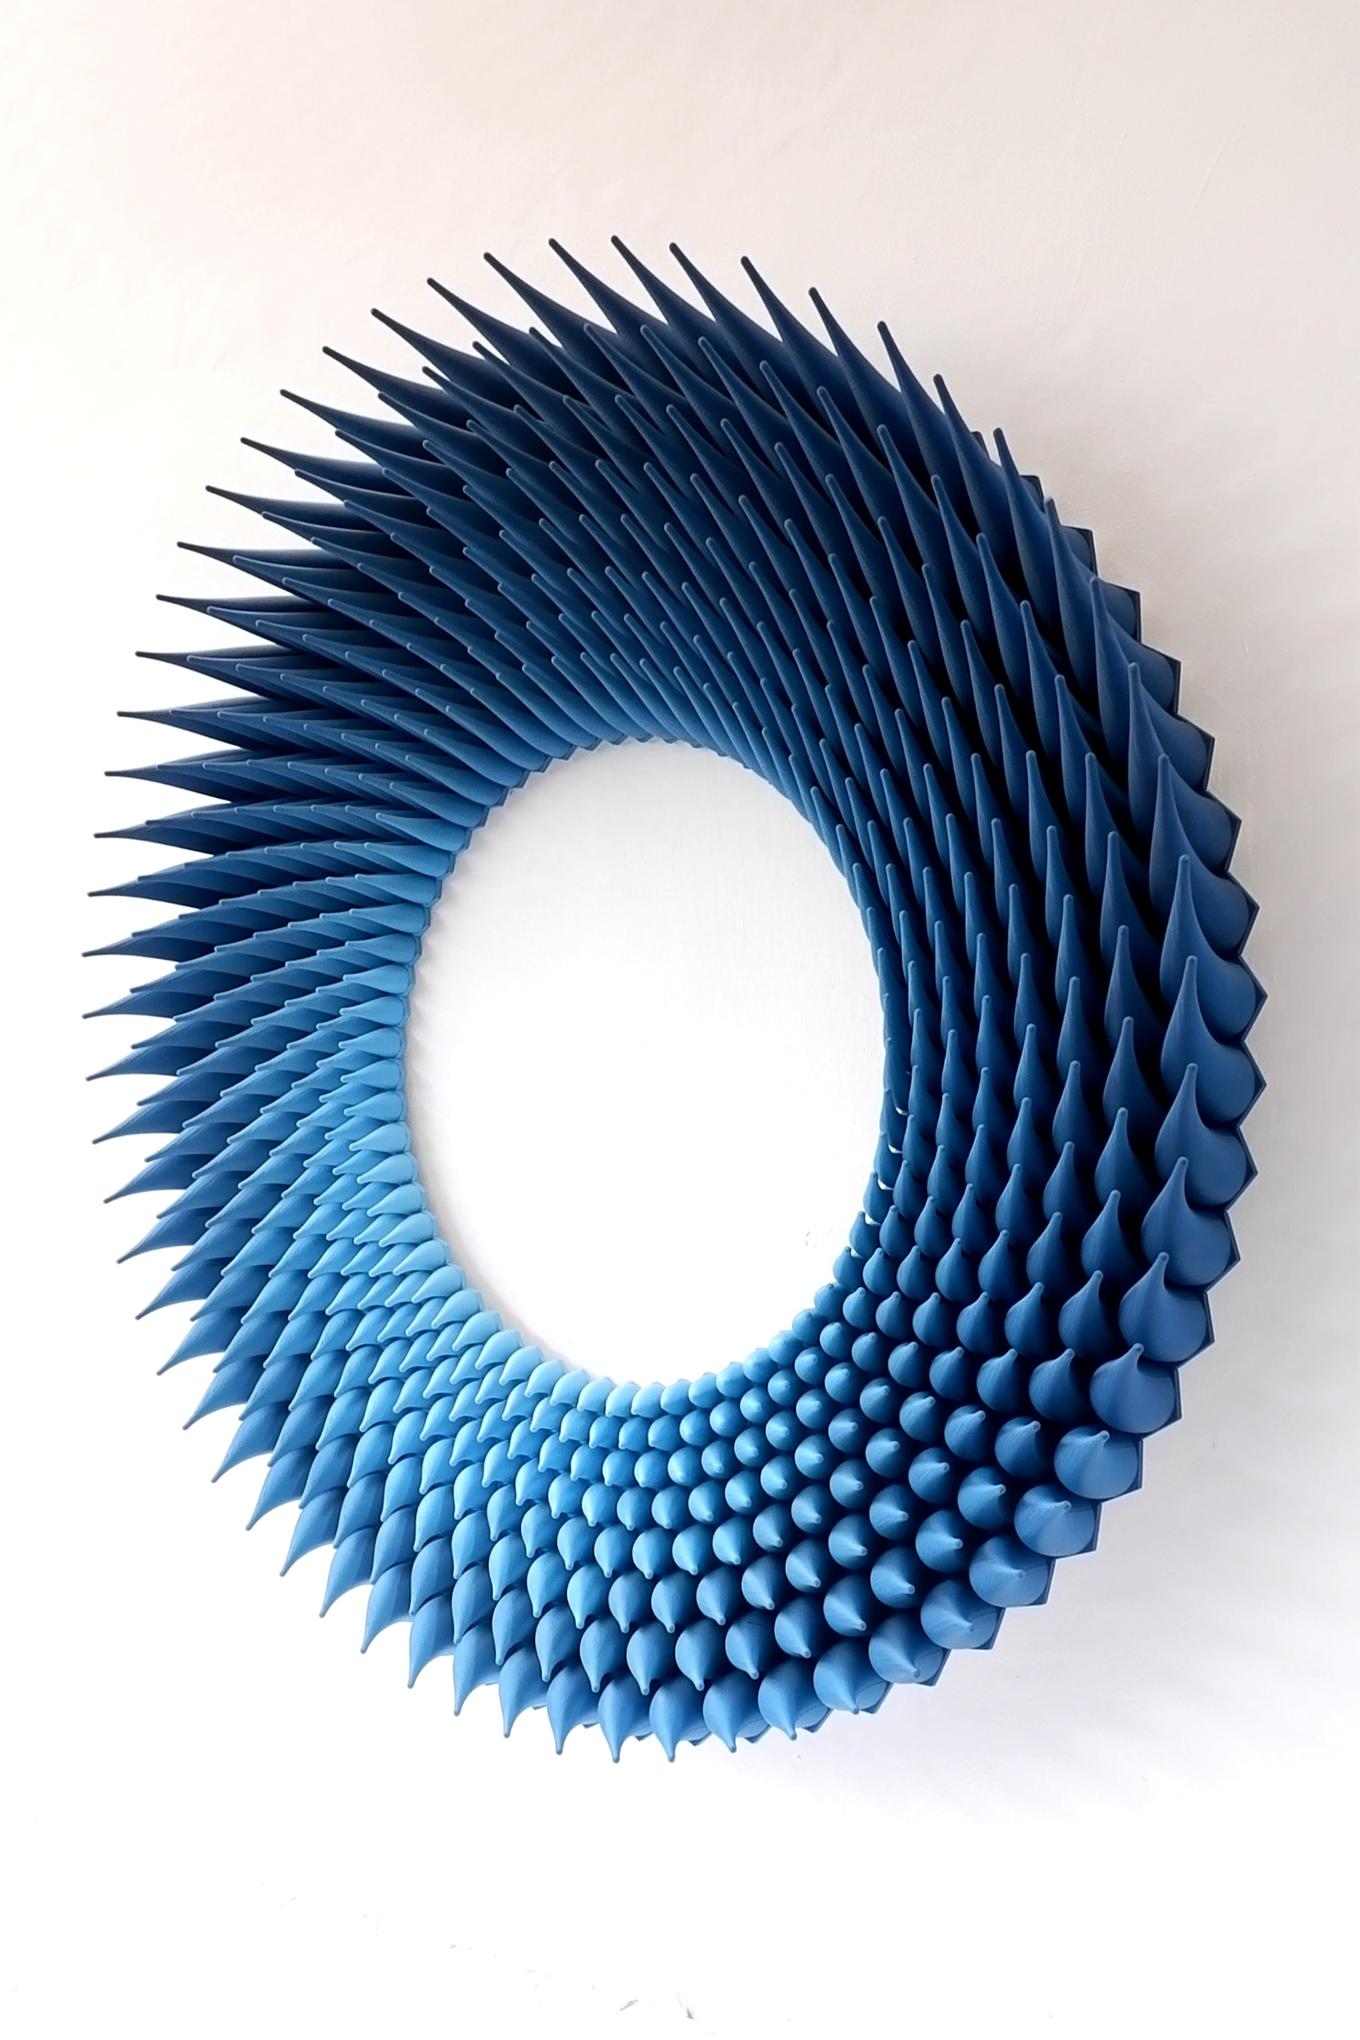 Jagged Loop | Herschel Shapiro | Abstract Relief Sculpture